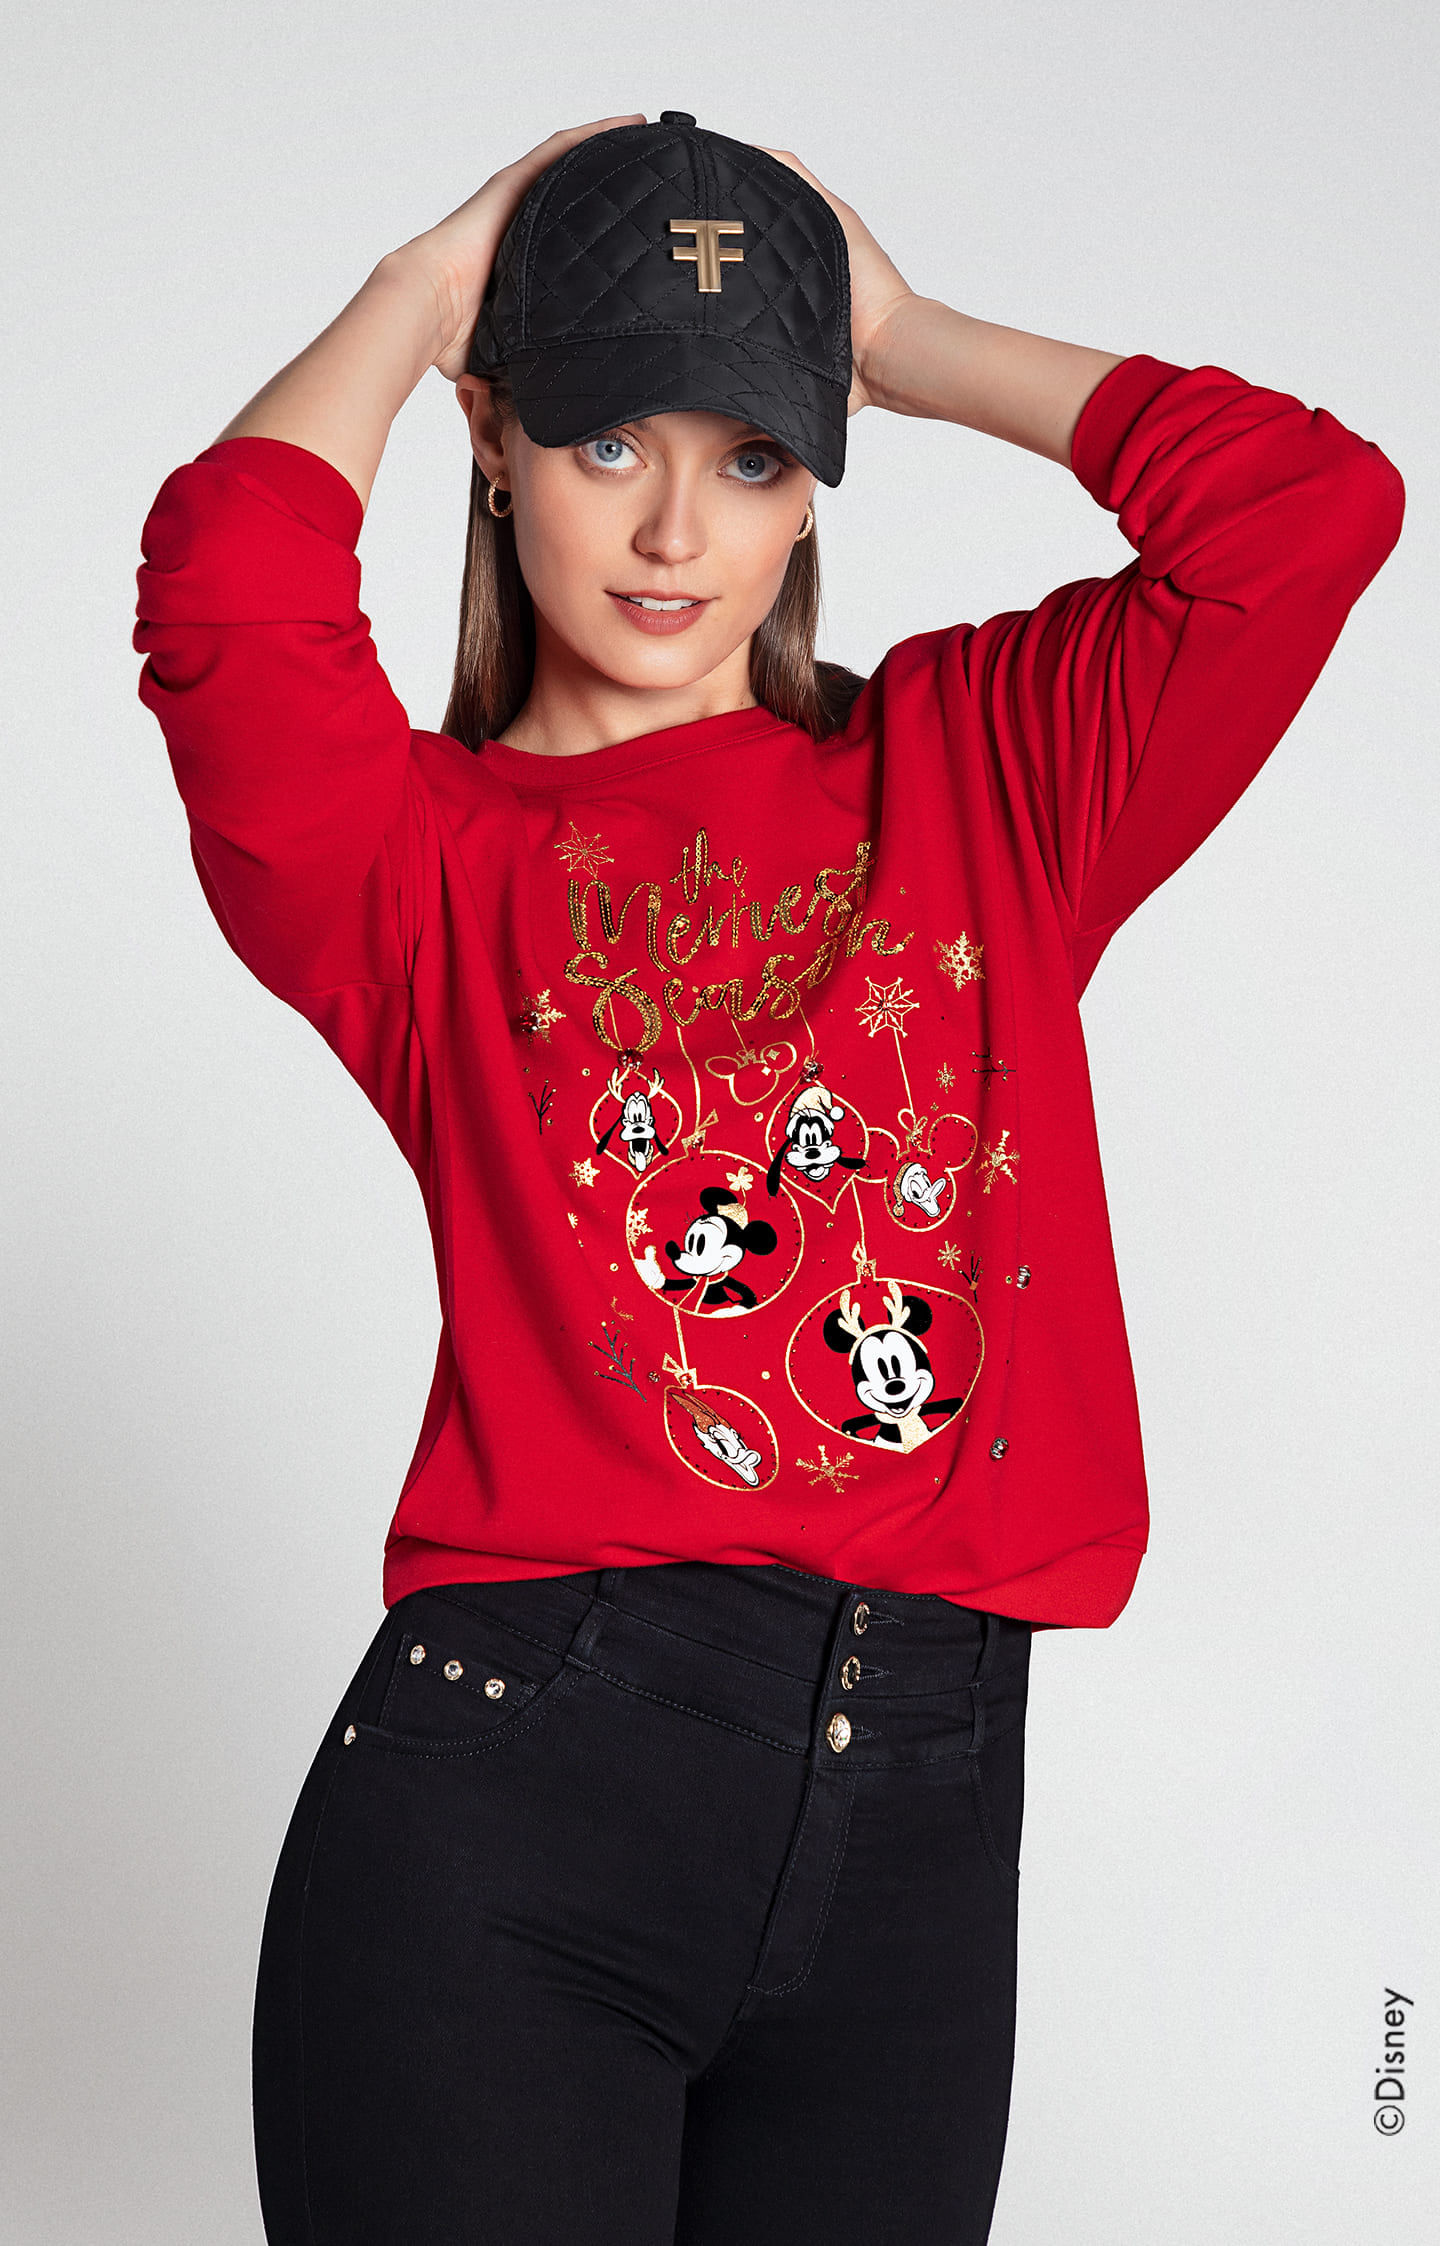 Mujer vistiendo buzo rojo de navidad con personajes de disney, pantalón negro y gorra negra studio F